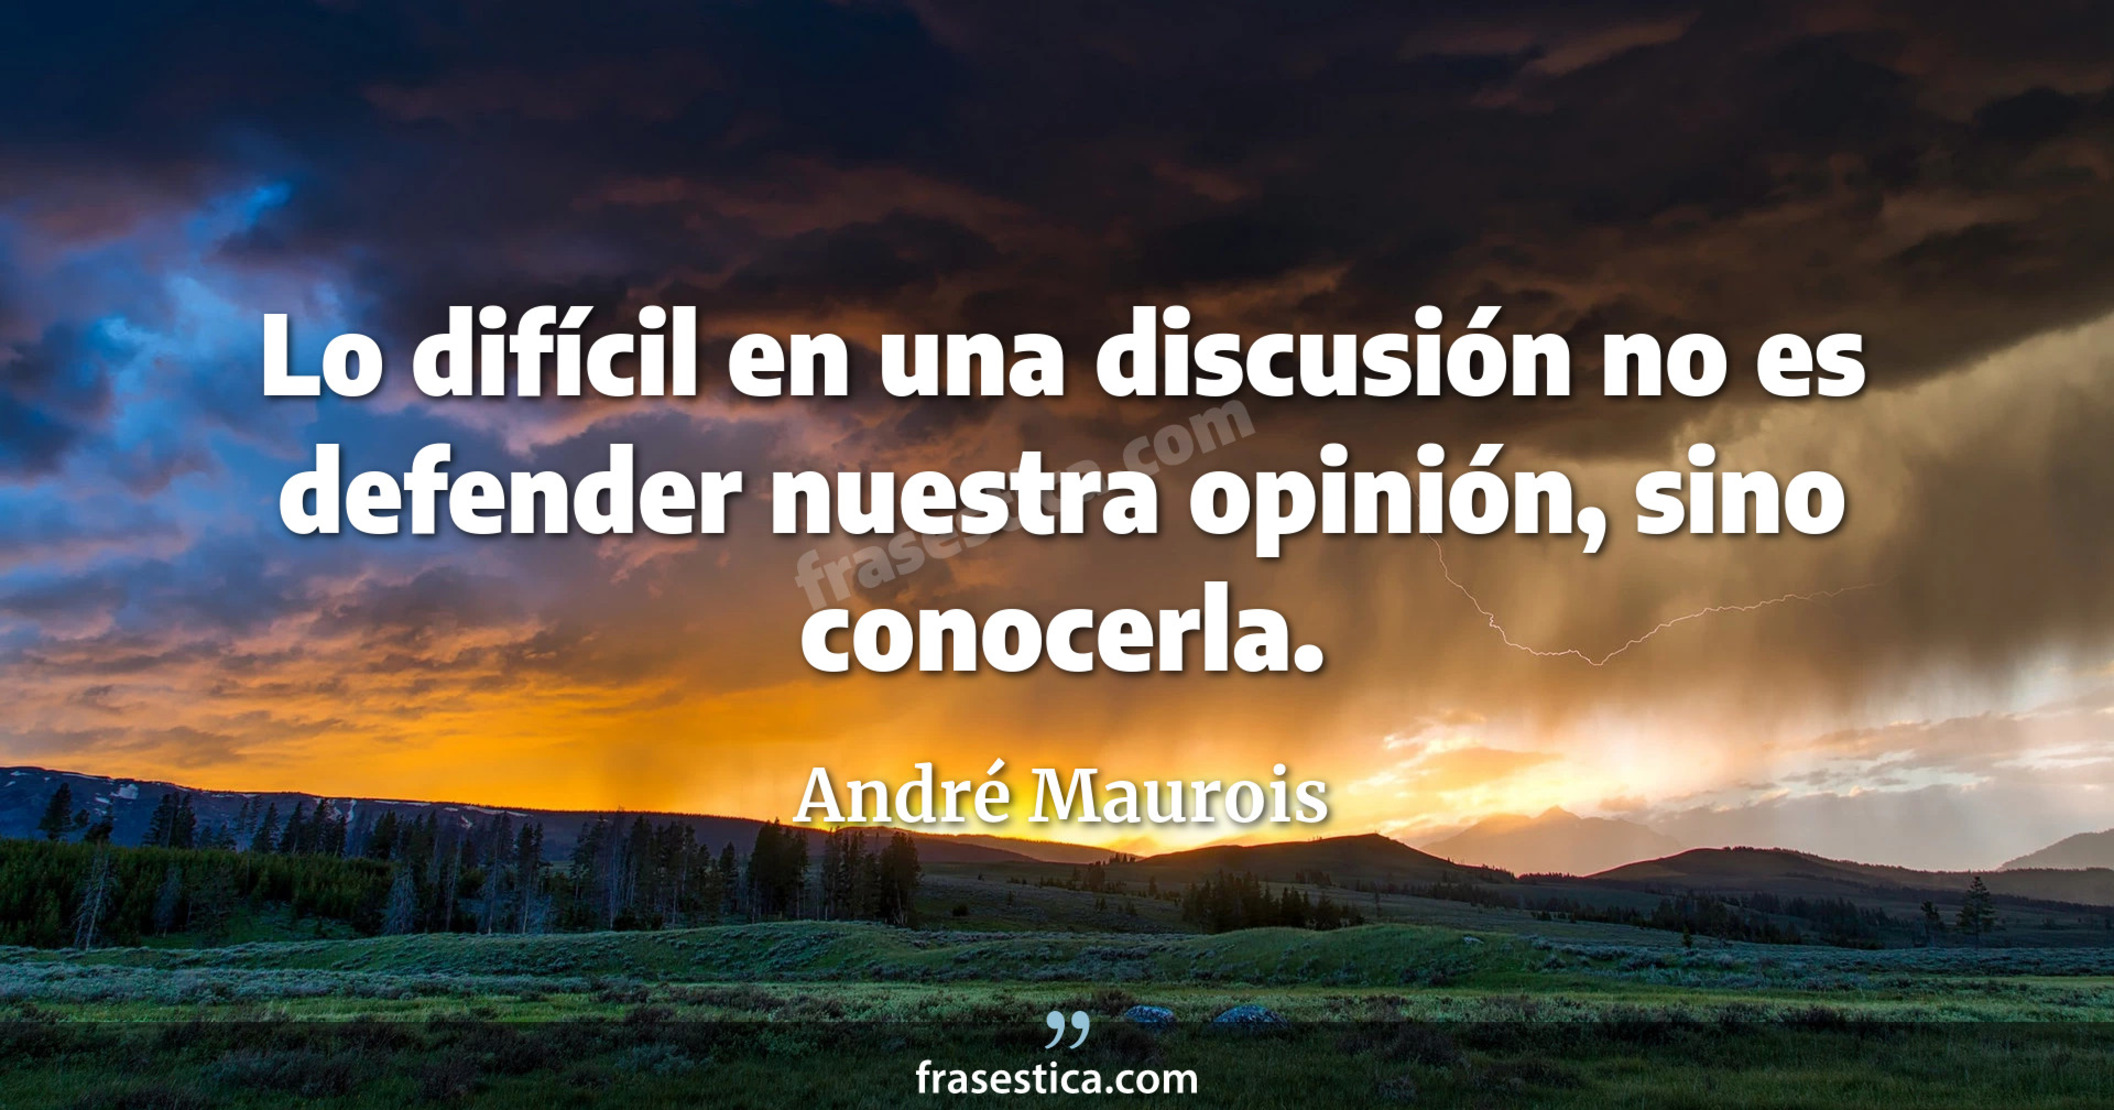 Lo difícil en una discusión no es defender nuestra opinión, sino conocerla. - André Maurois